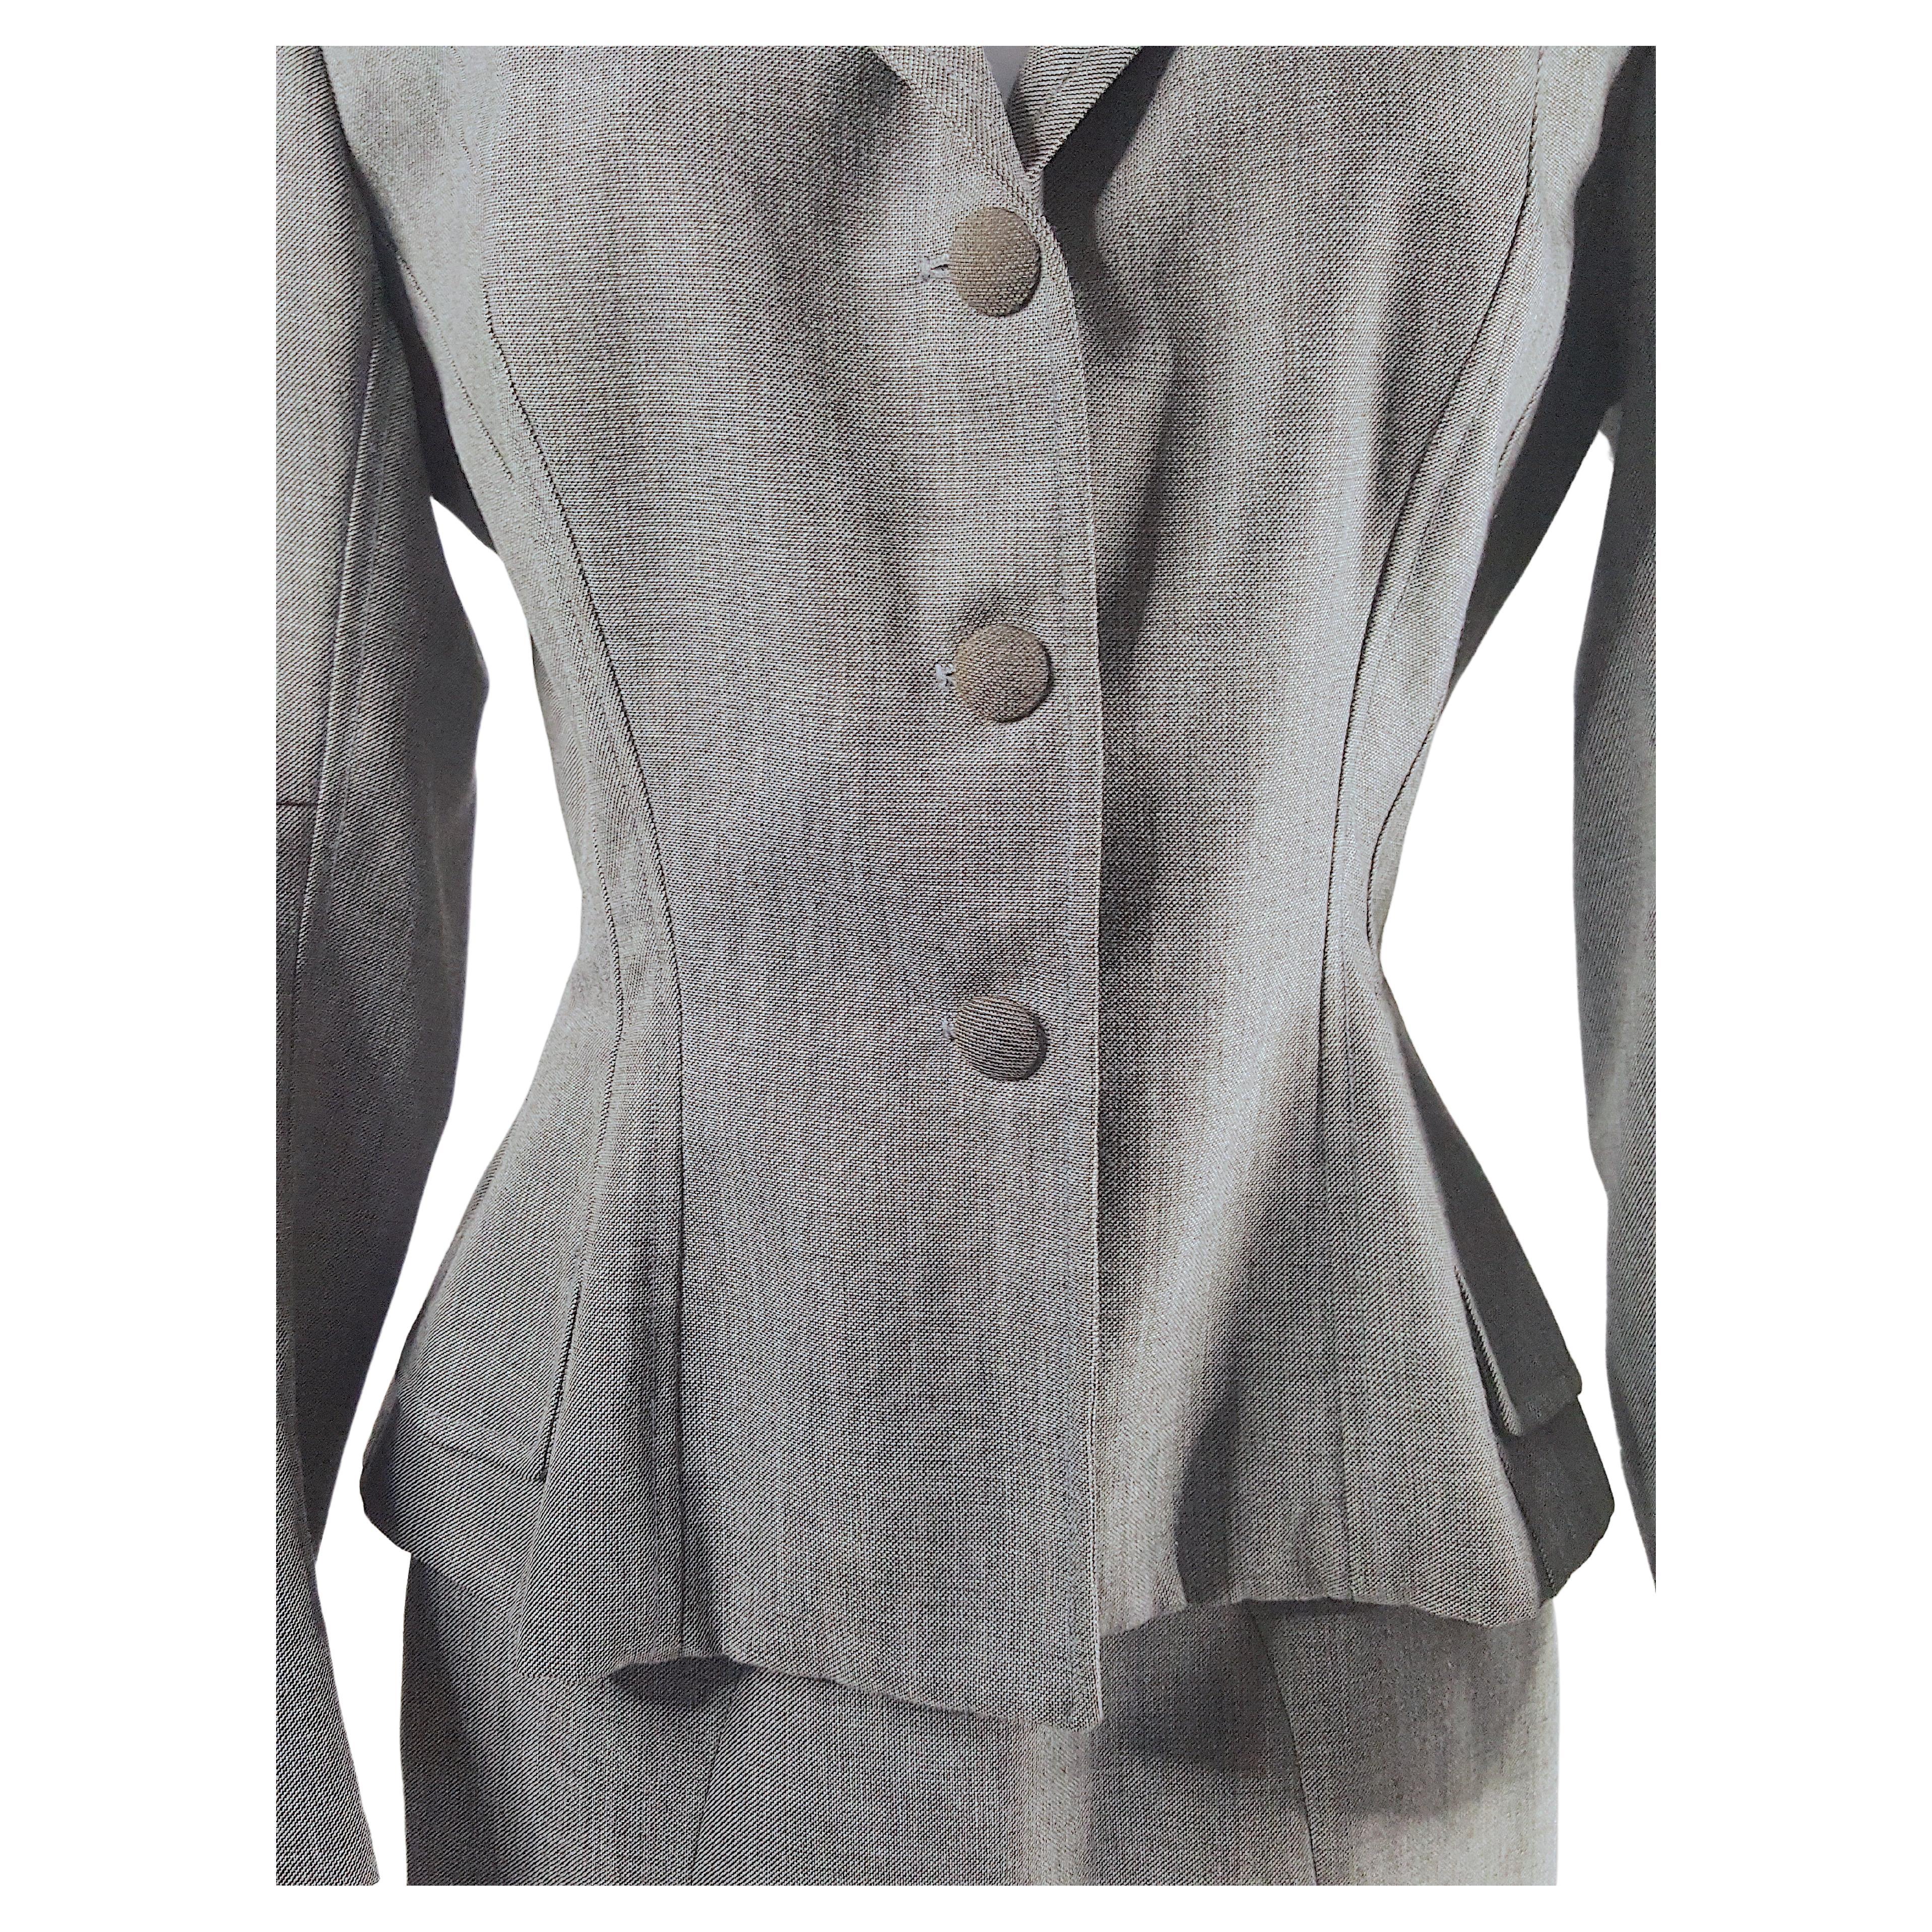 Confectionné par Martin Grant dans son atelier parisien du Marais au milieu des années 1990, ce tailleur à jupe fendue en laine légère écossaise gris pâle comporte de nombreux éléments taillés à la main, à l'instar d'un modèle original de